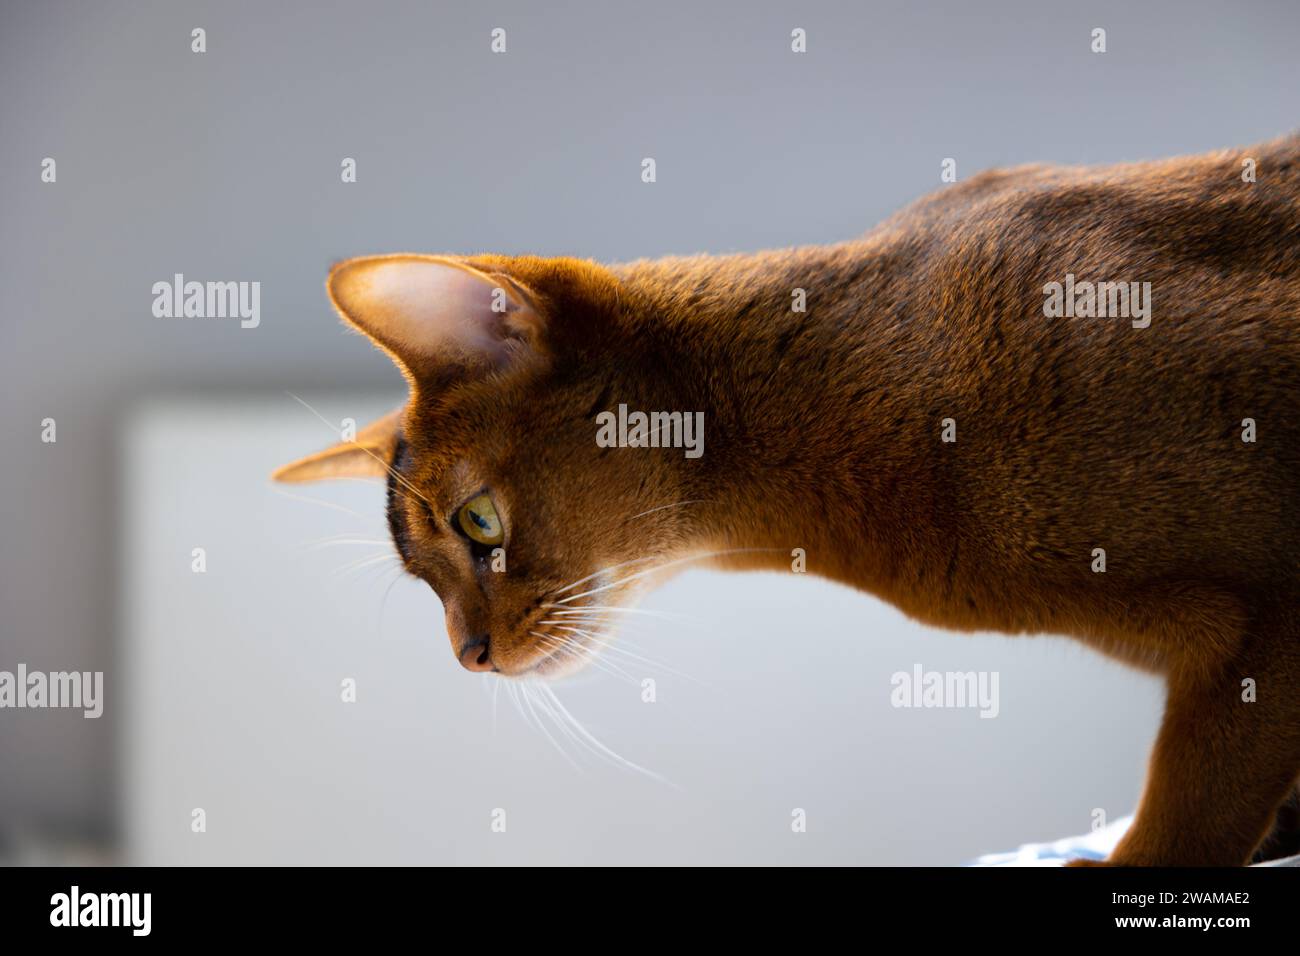 Portrait d'un chat domestique. Jeune chat abyssinien brun-rouge. Photo de côté Banque D'Images